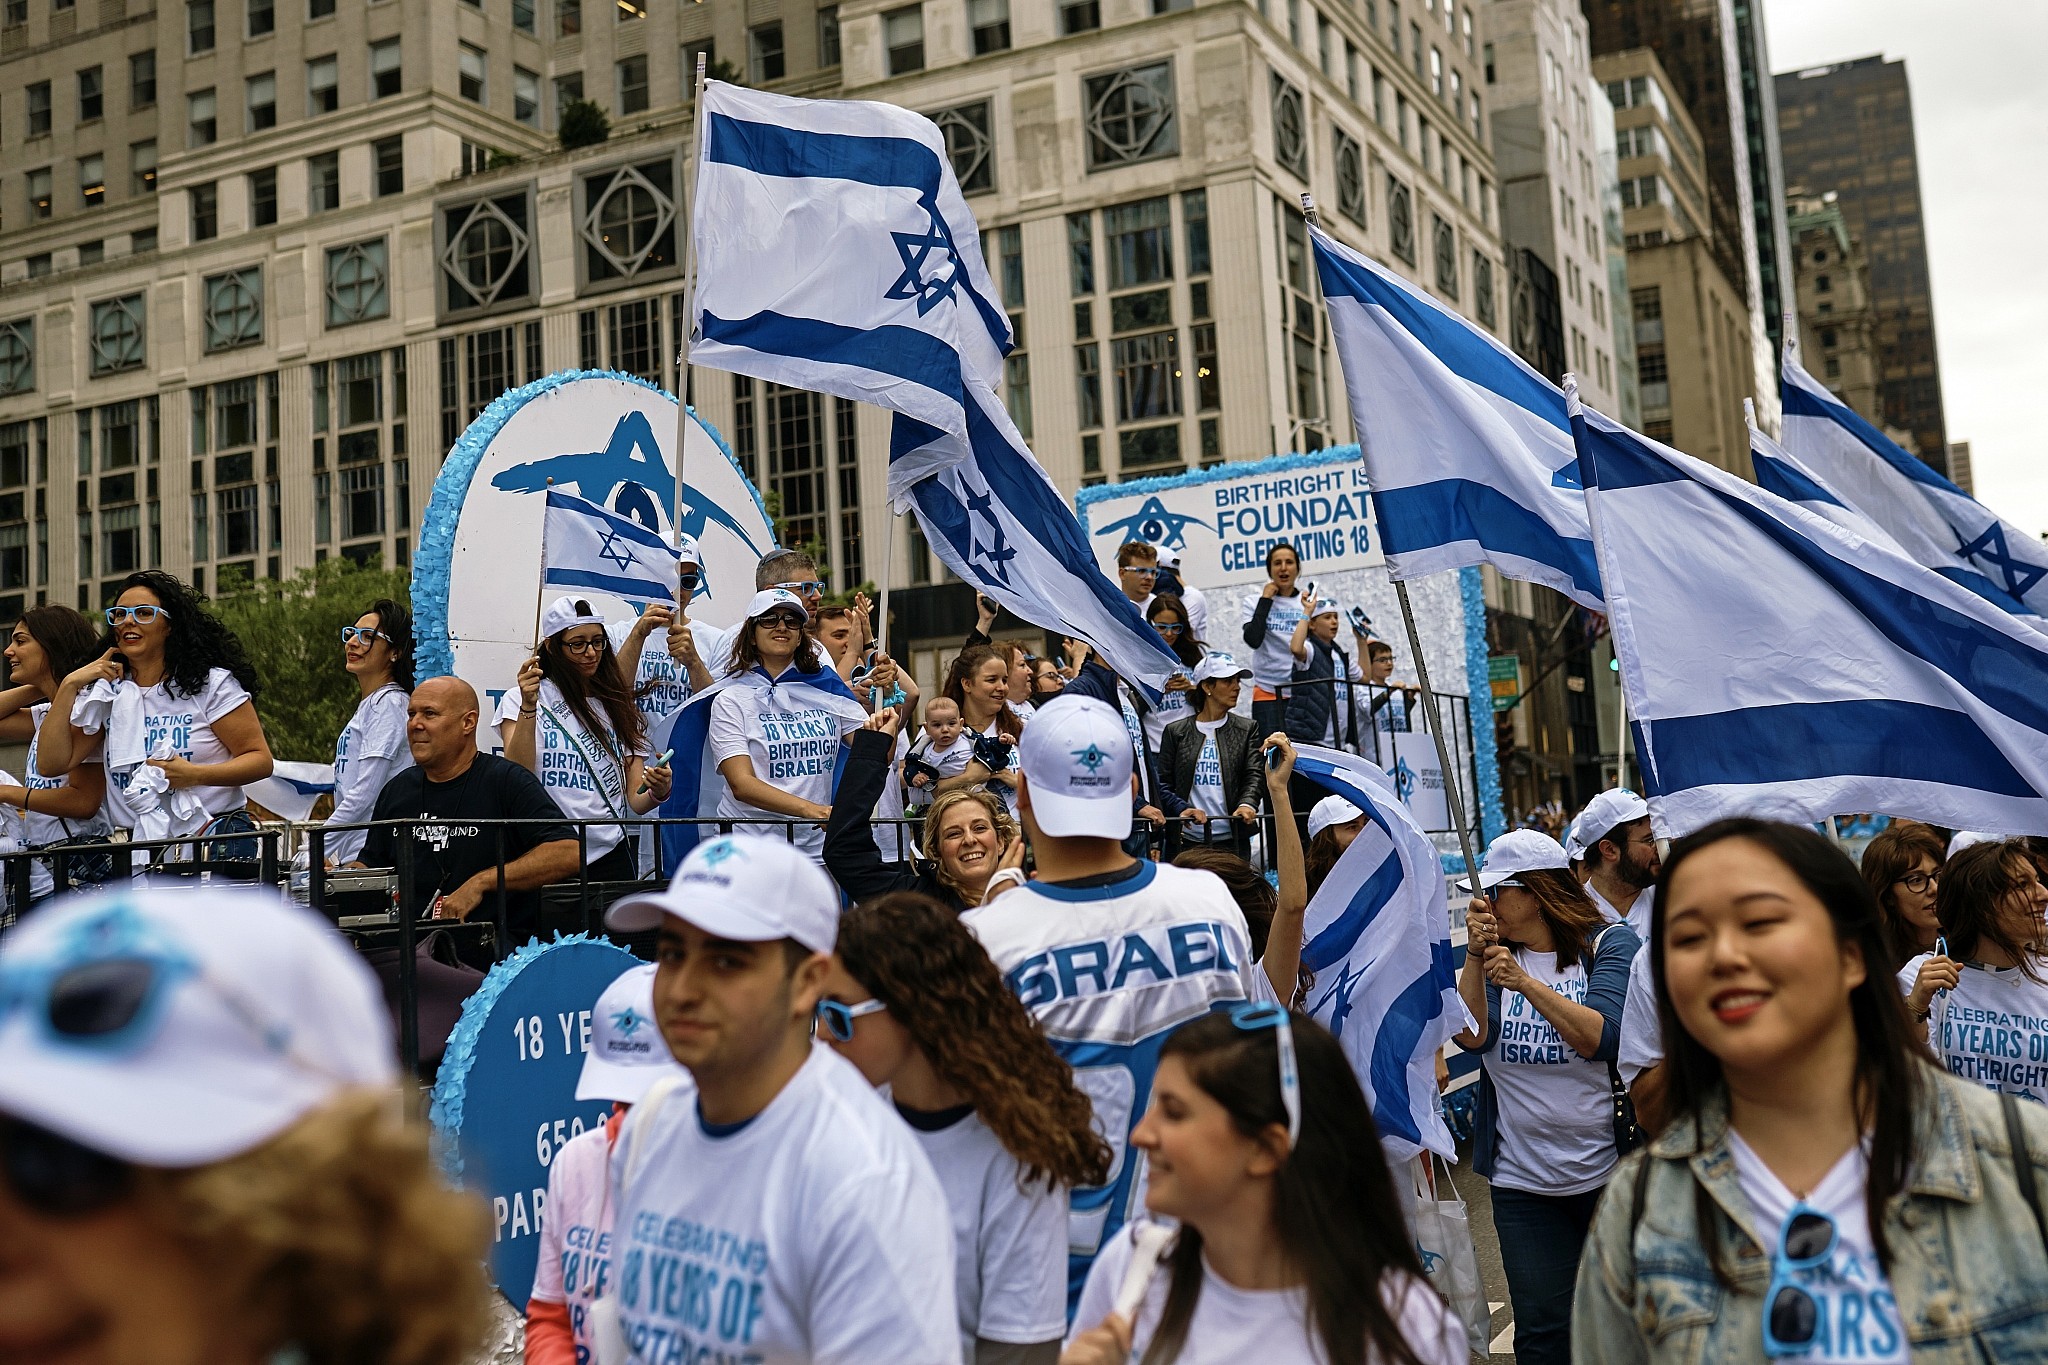 Abrasive Israel, apathetic Diaspora behind Jewry's widening gap